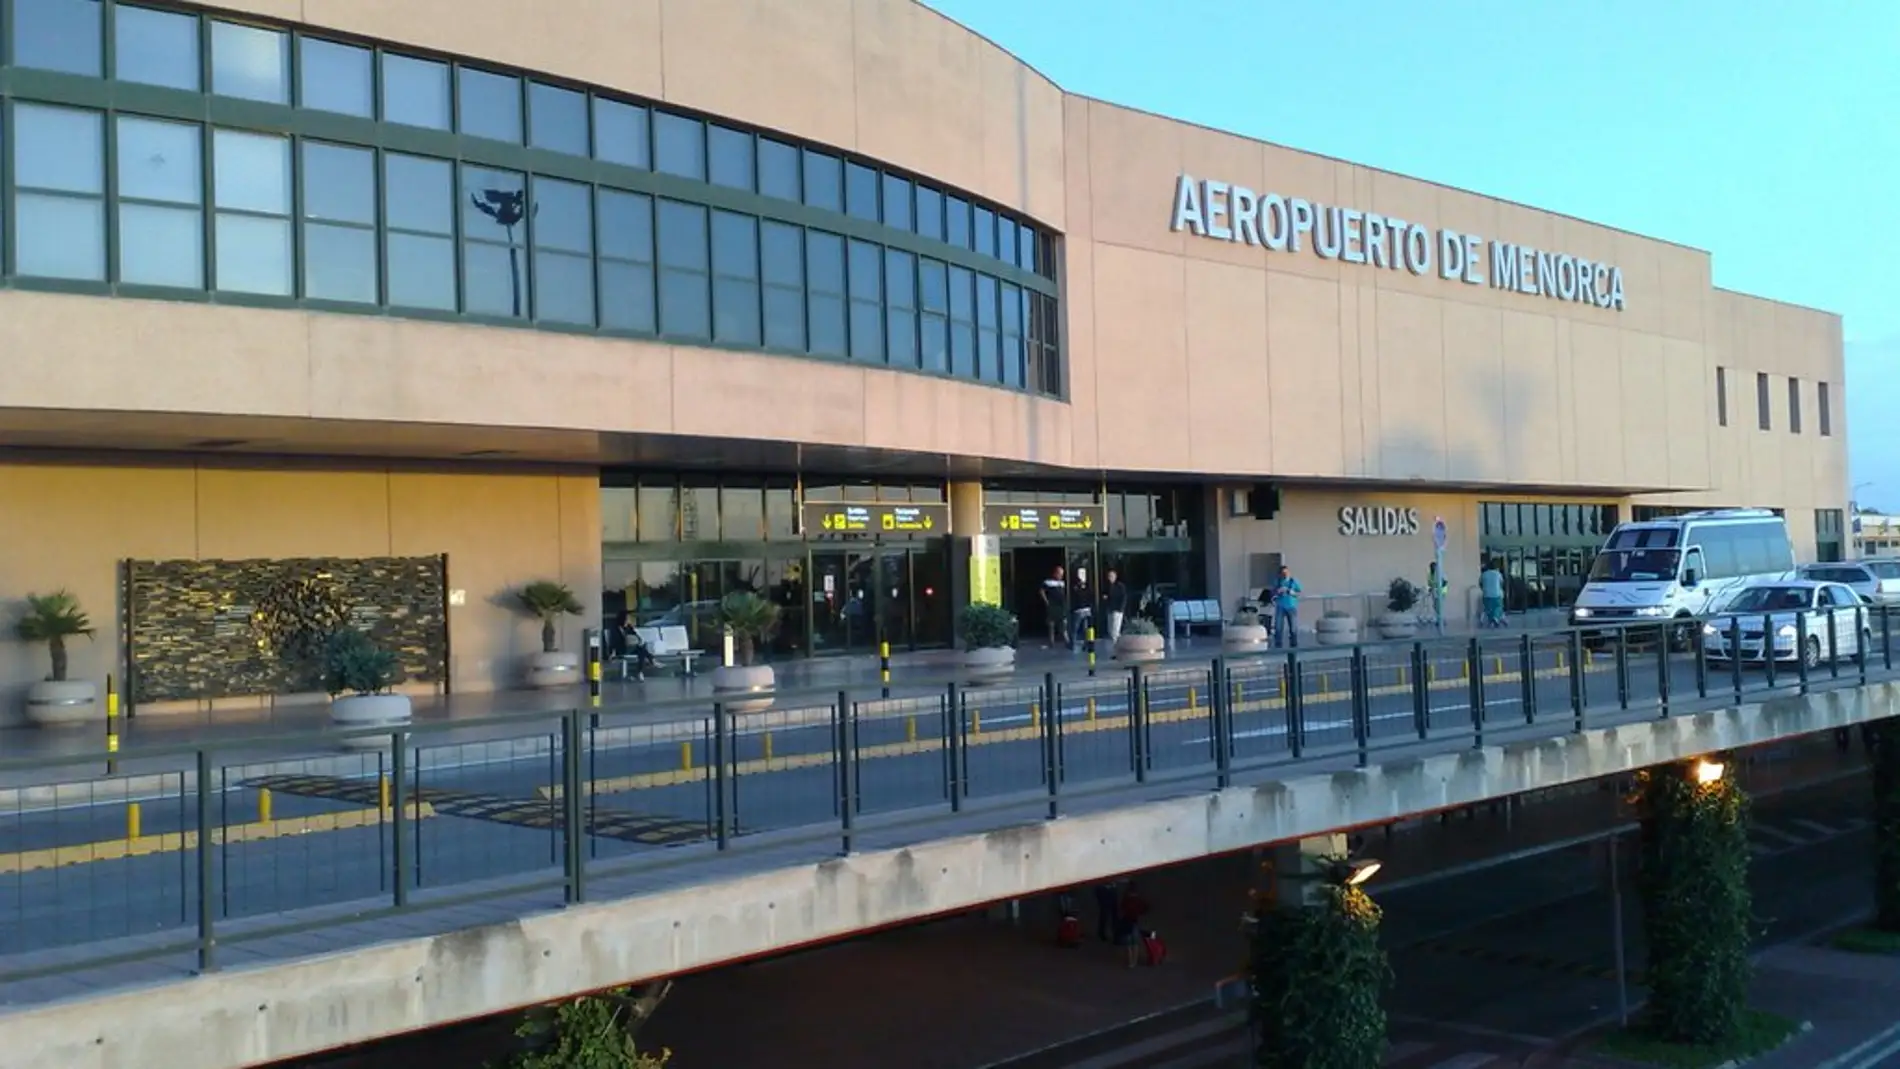 Aeropuerto de Menorca. 